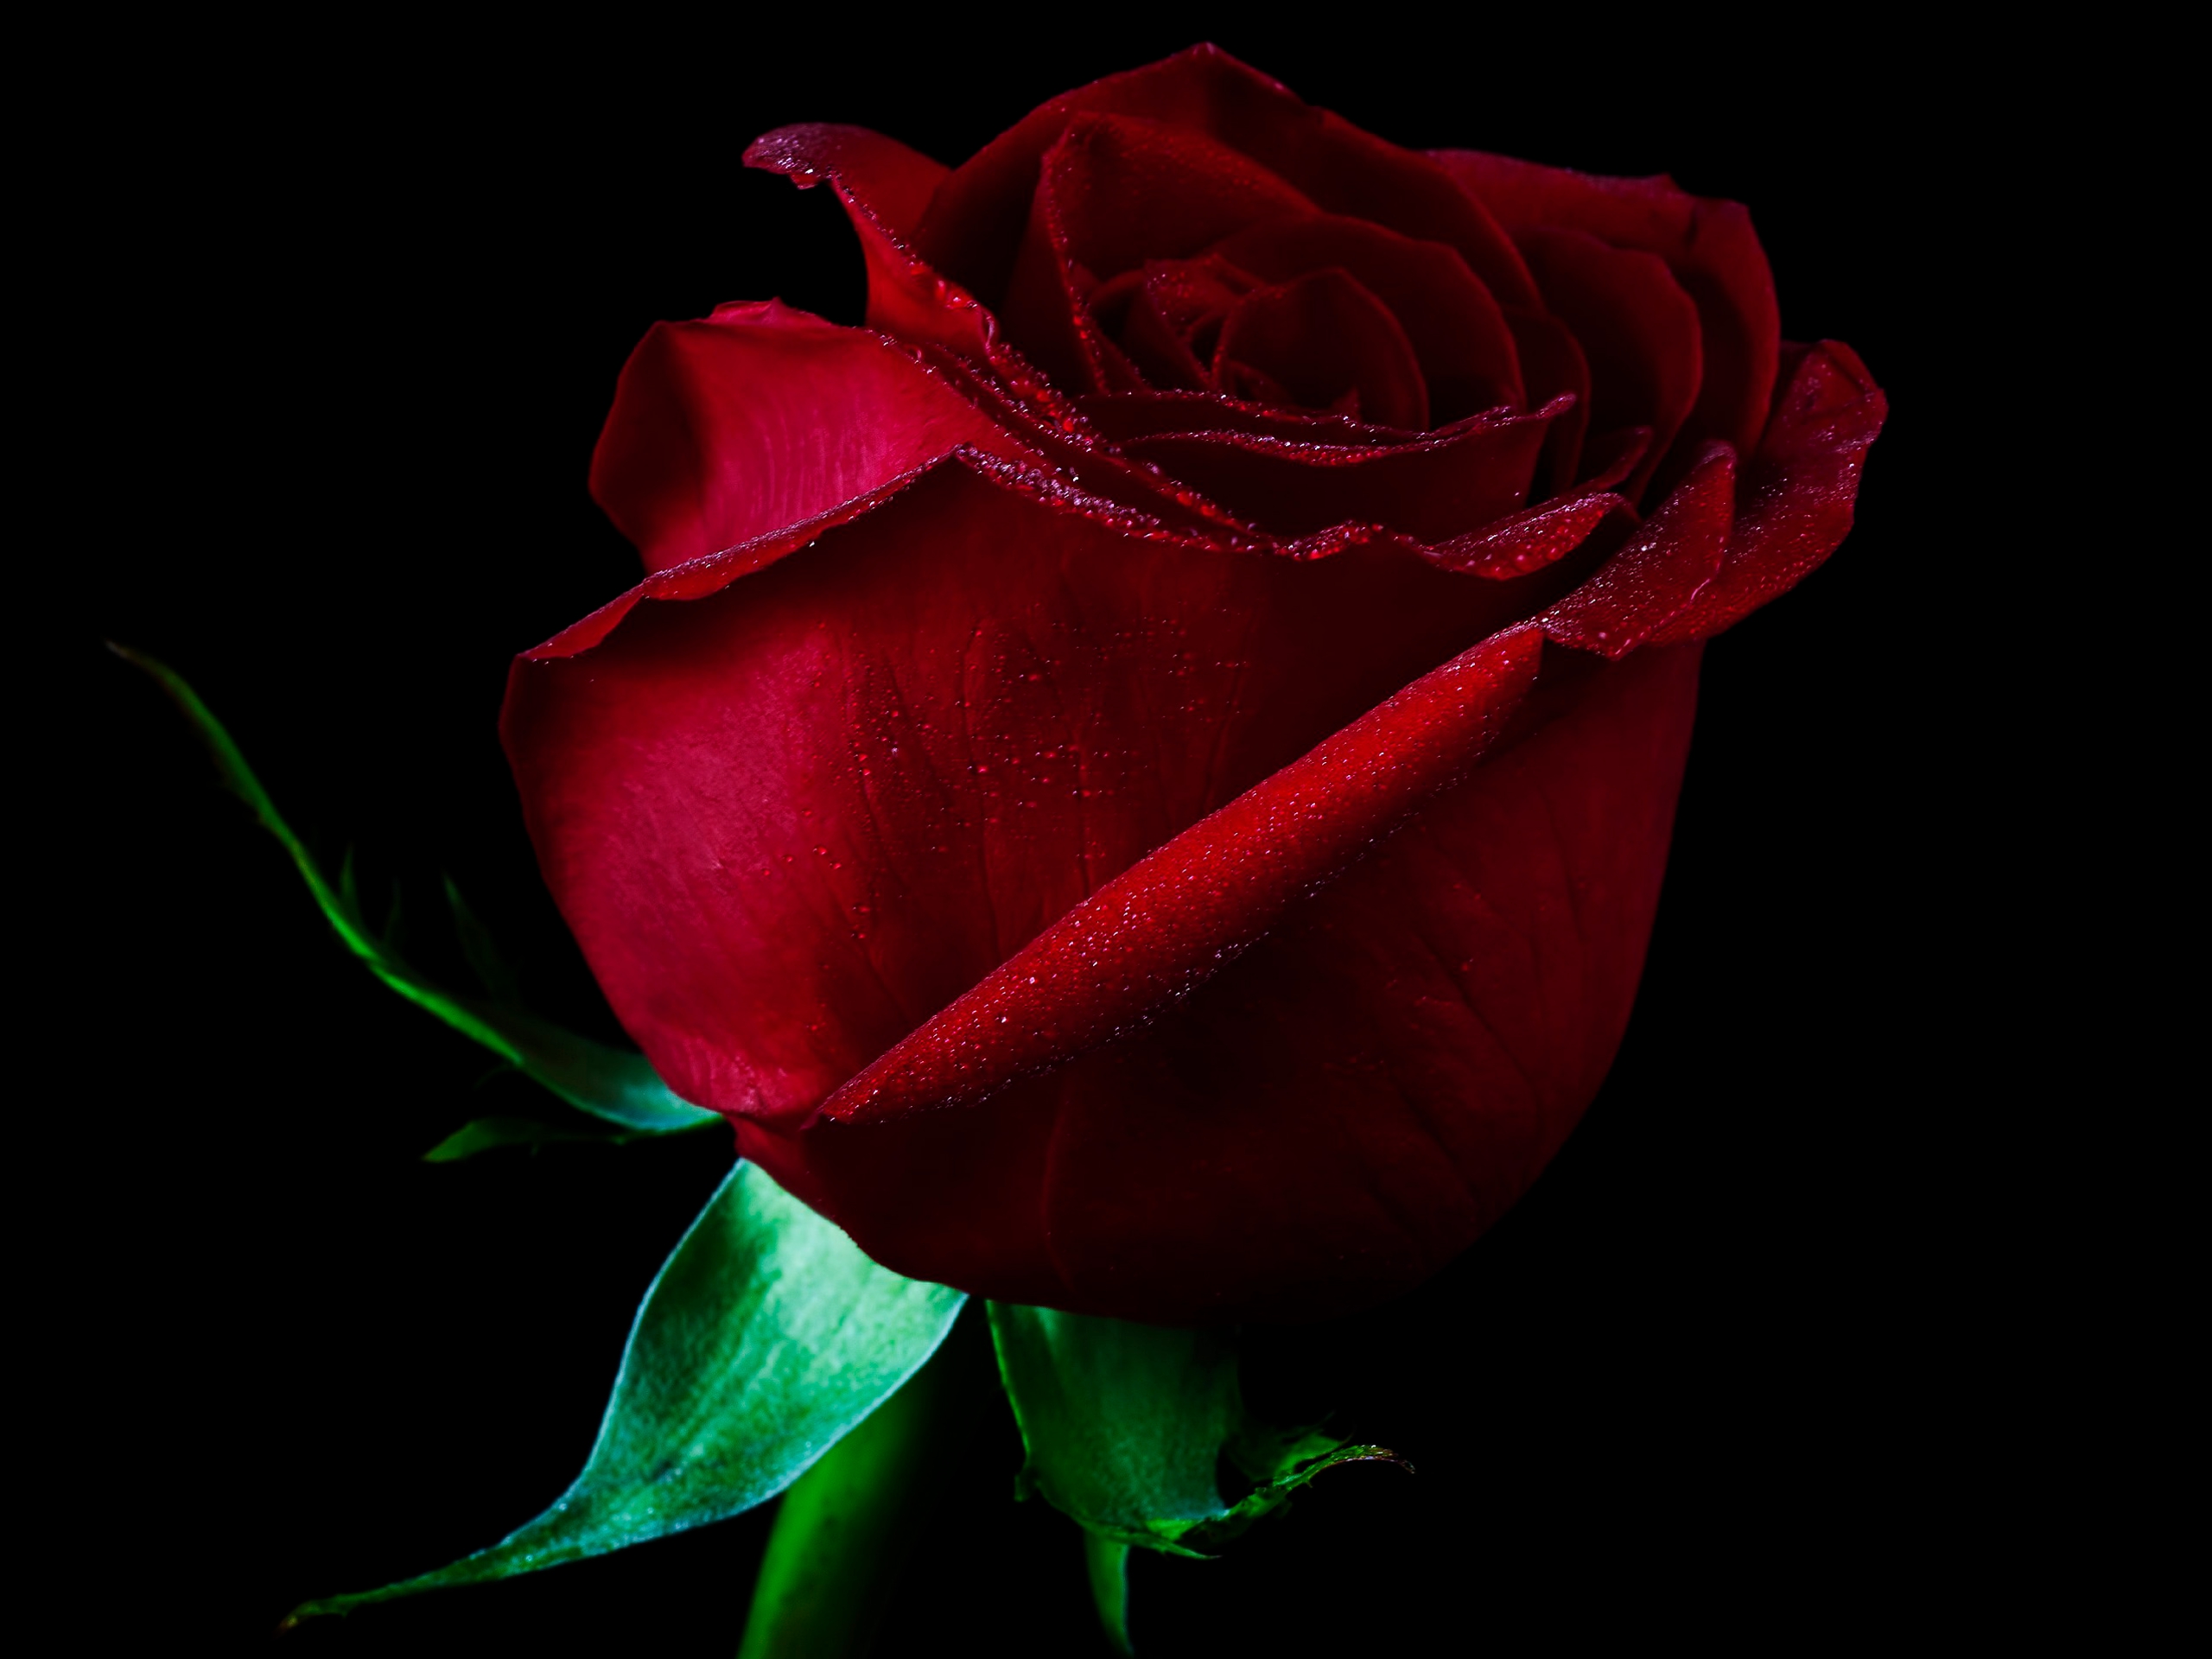 Red Rose Pic Hd 2560x19 Wallpaper Teahub Io